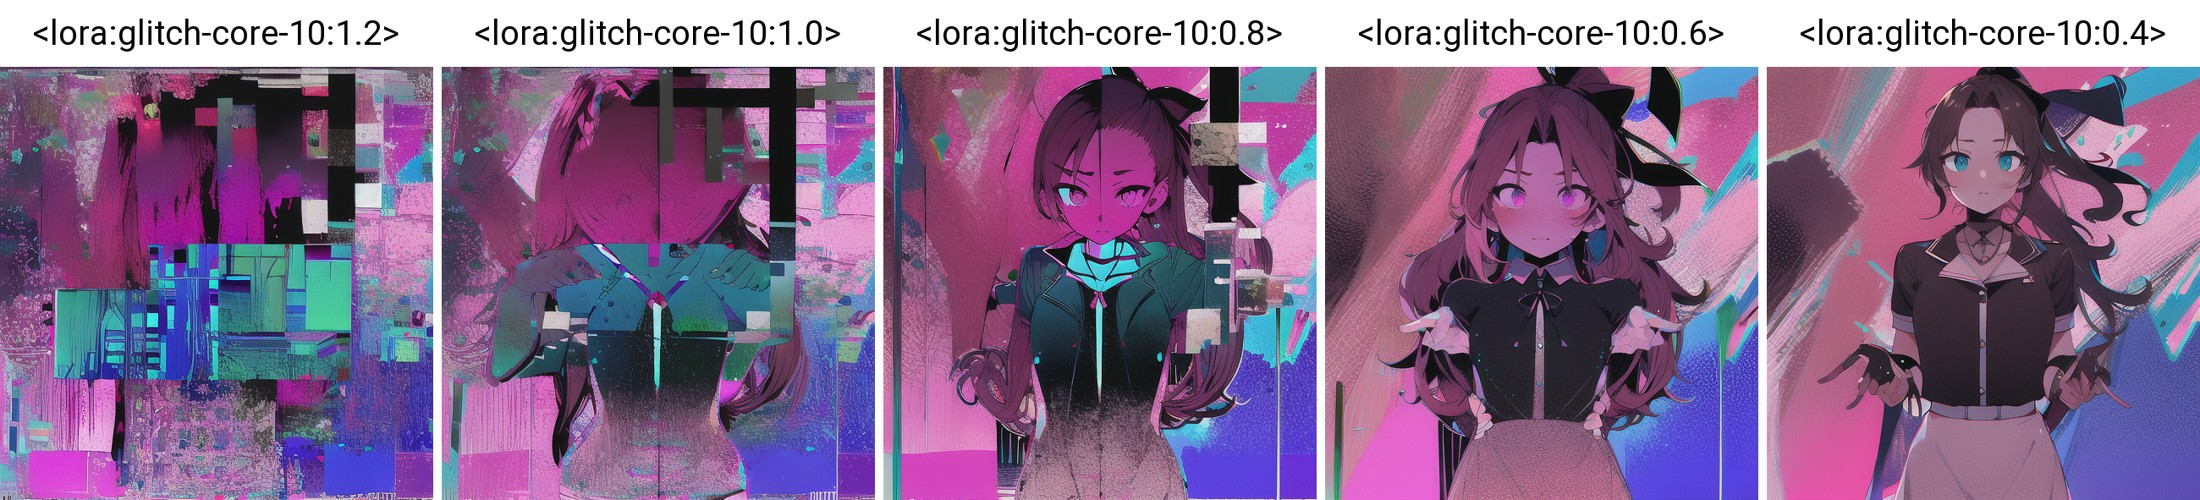 glitched, artefact, (corneo_aerith:0.7), colorful background,<lora:glitch-core-10:1.2>